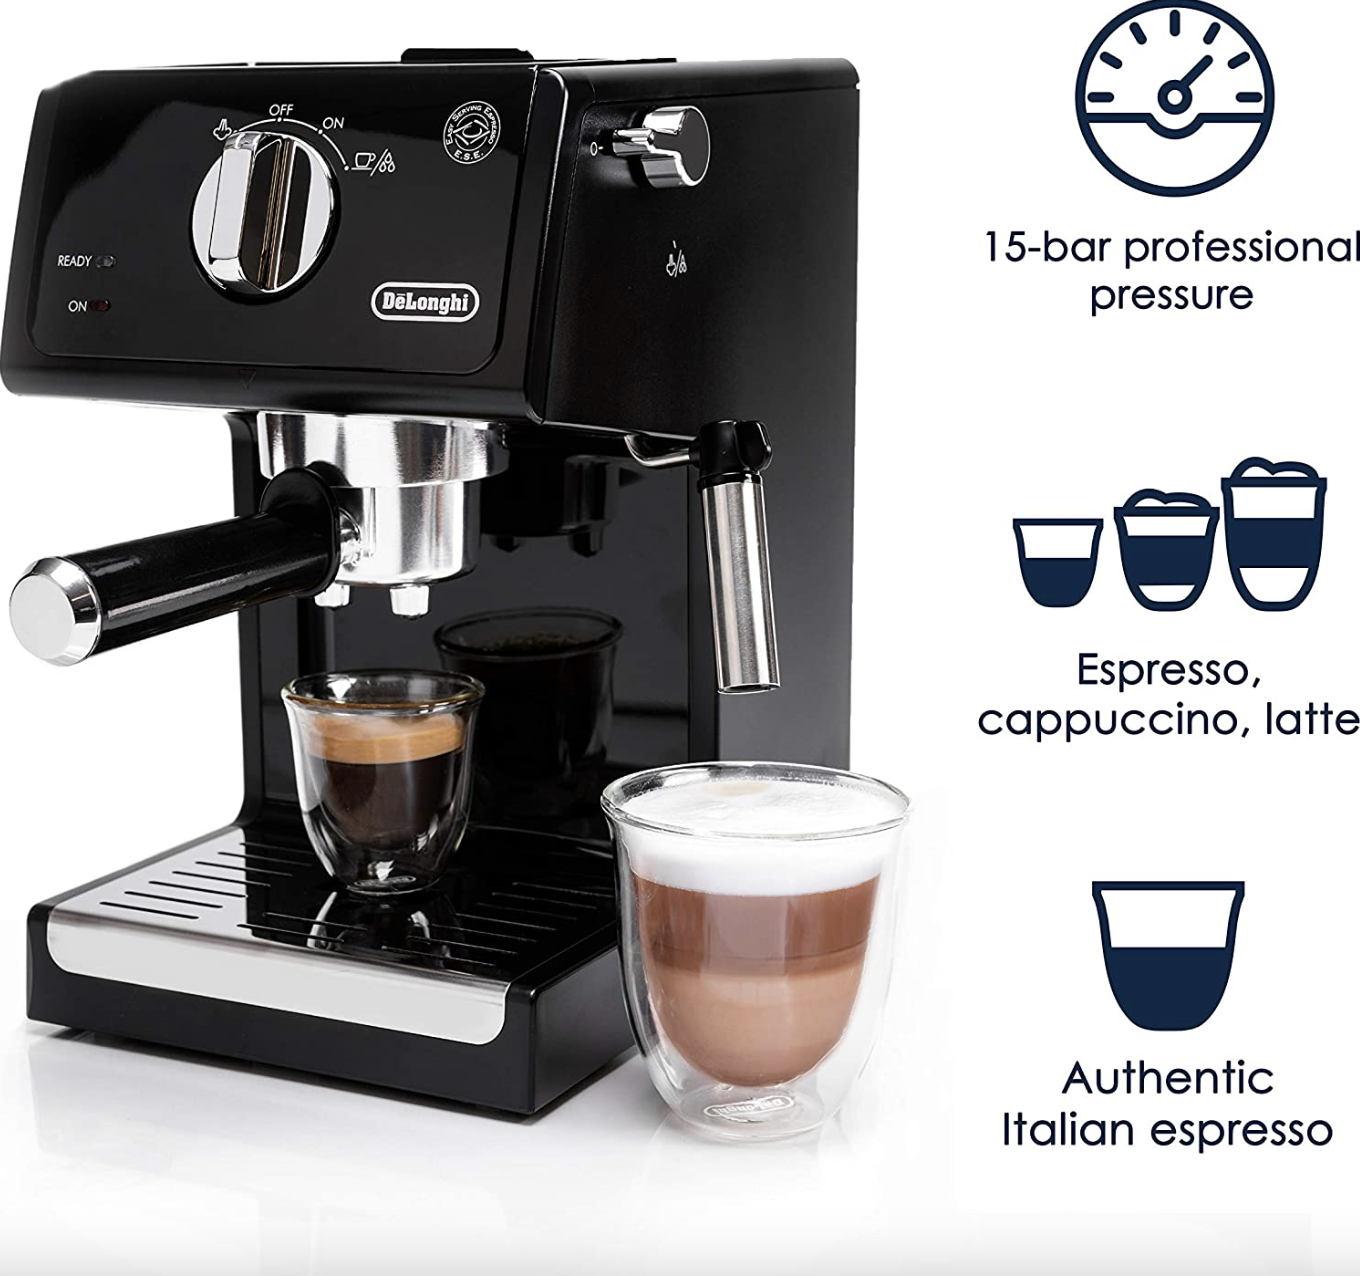 A black espresso machine with espresso in two cups